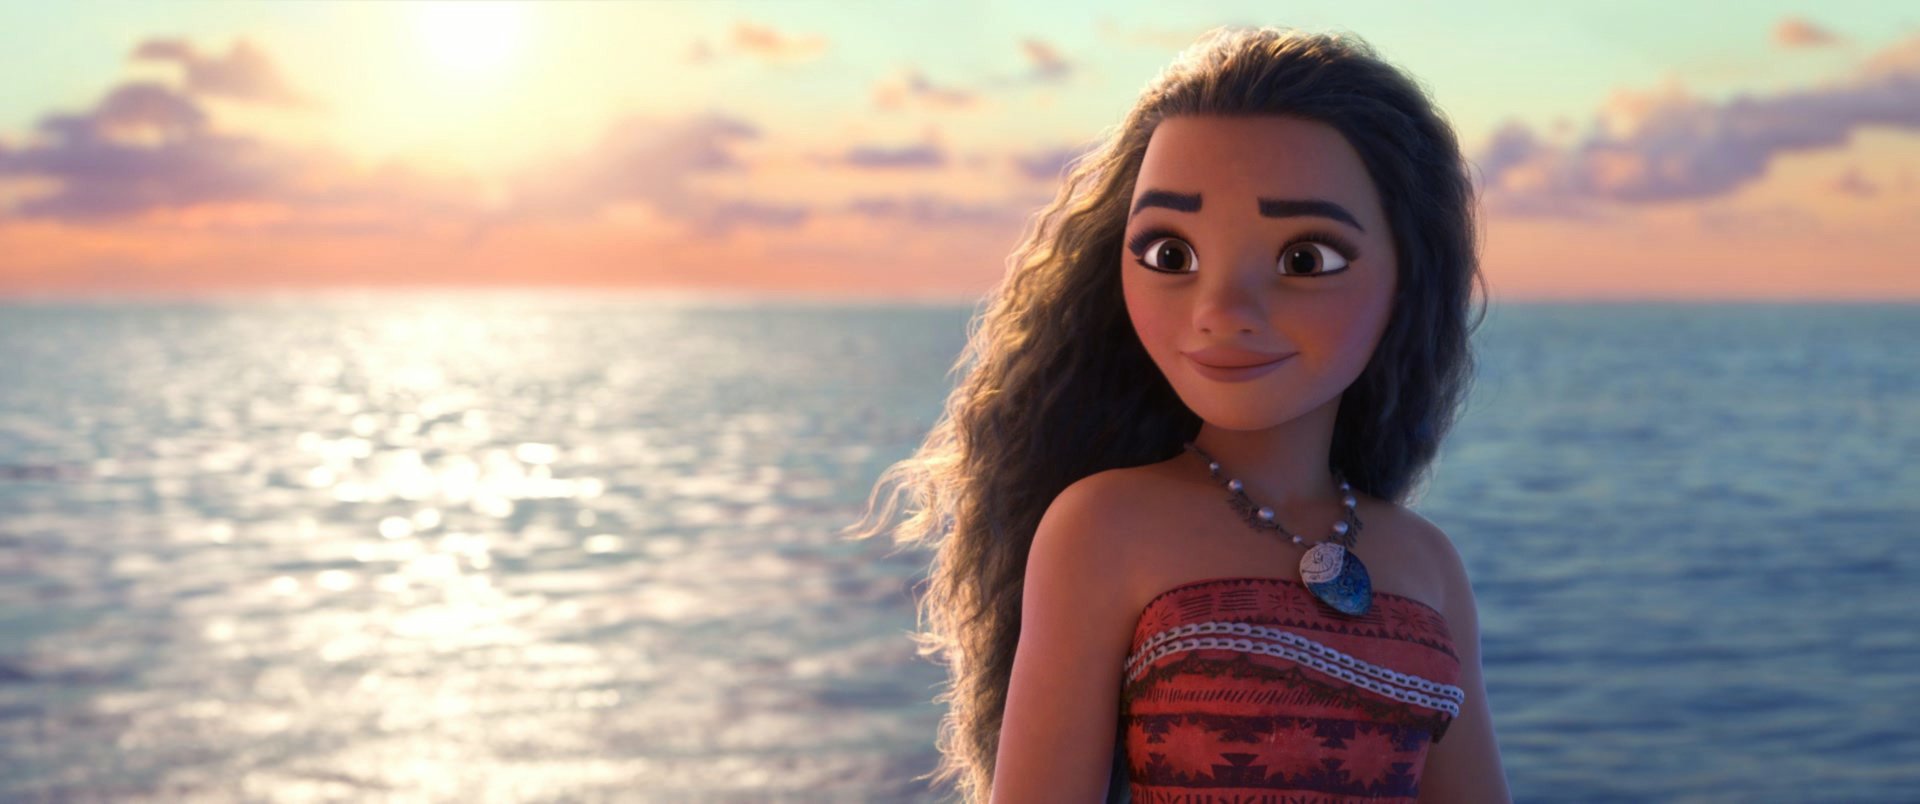 Próxima animação da Disney terá princesa brasileira, afirma site